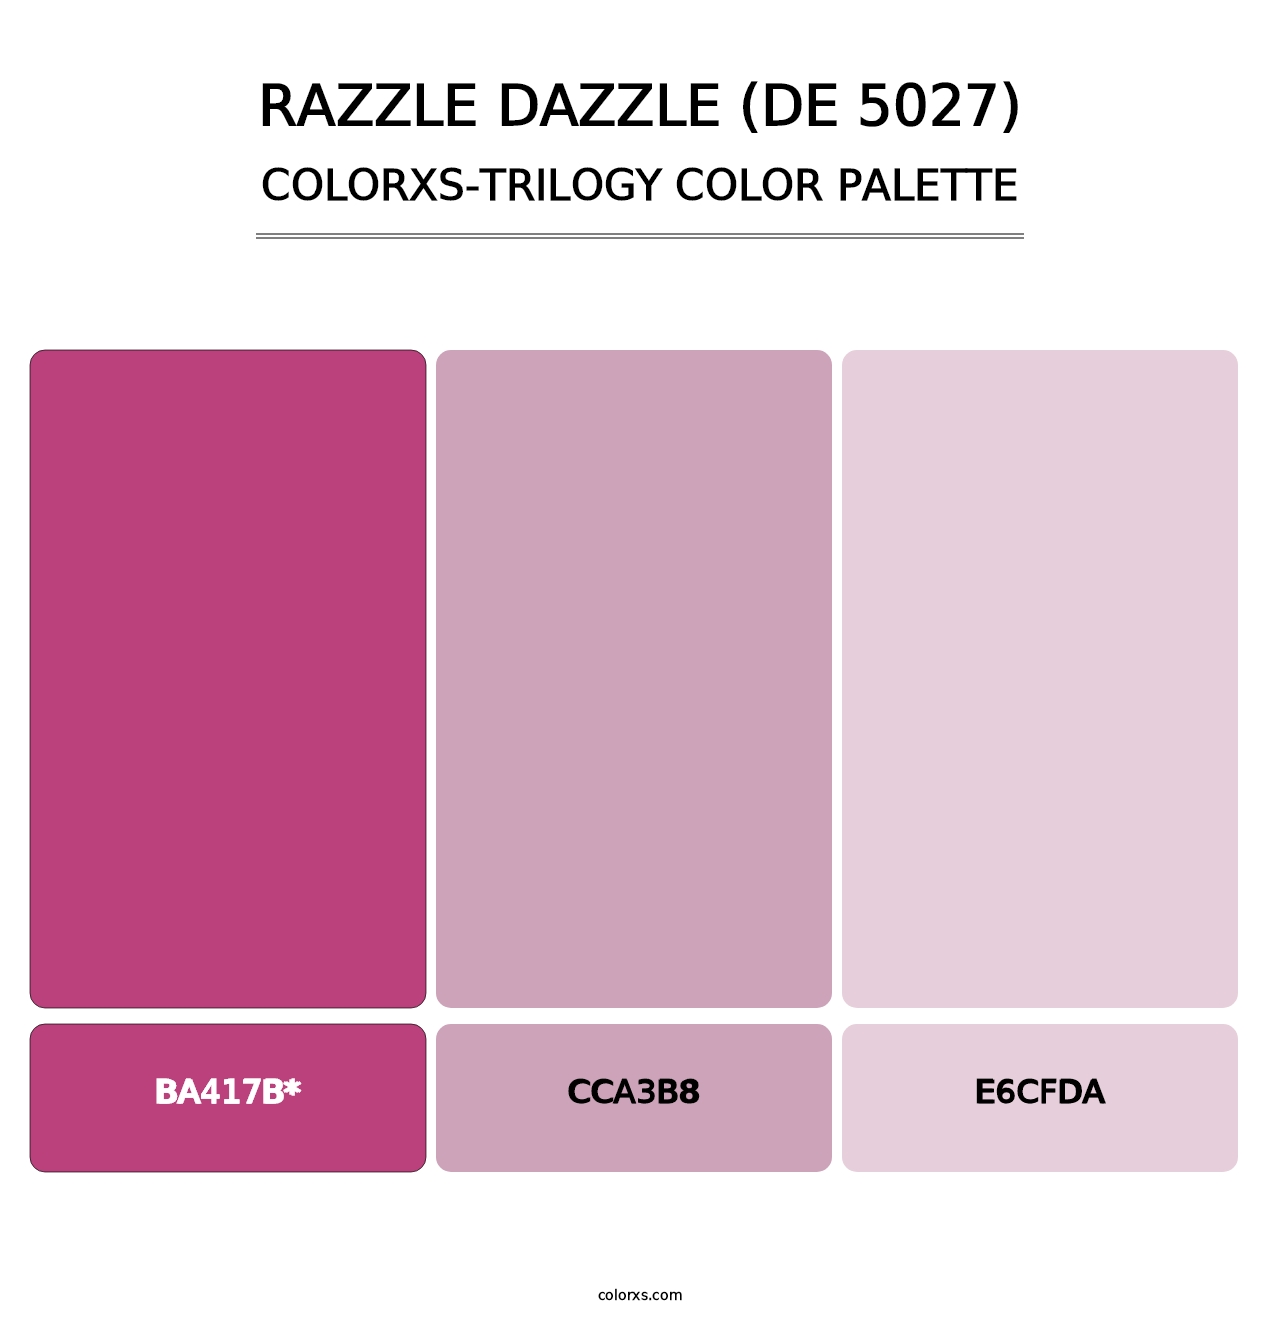 Razzle Dazzle (DE 5027) - Colorxs Trilogy Palette